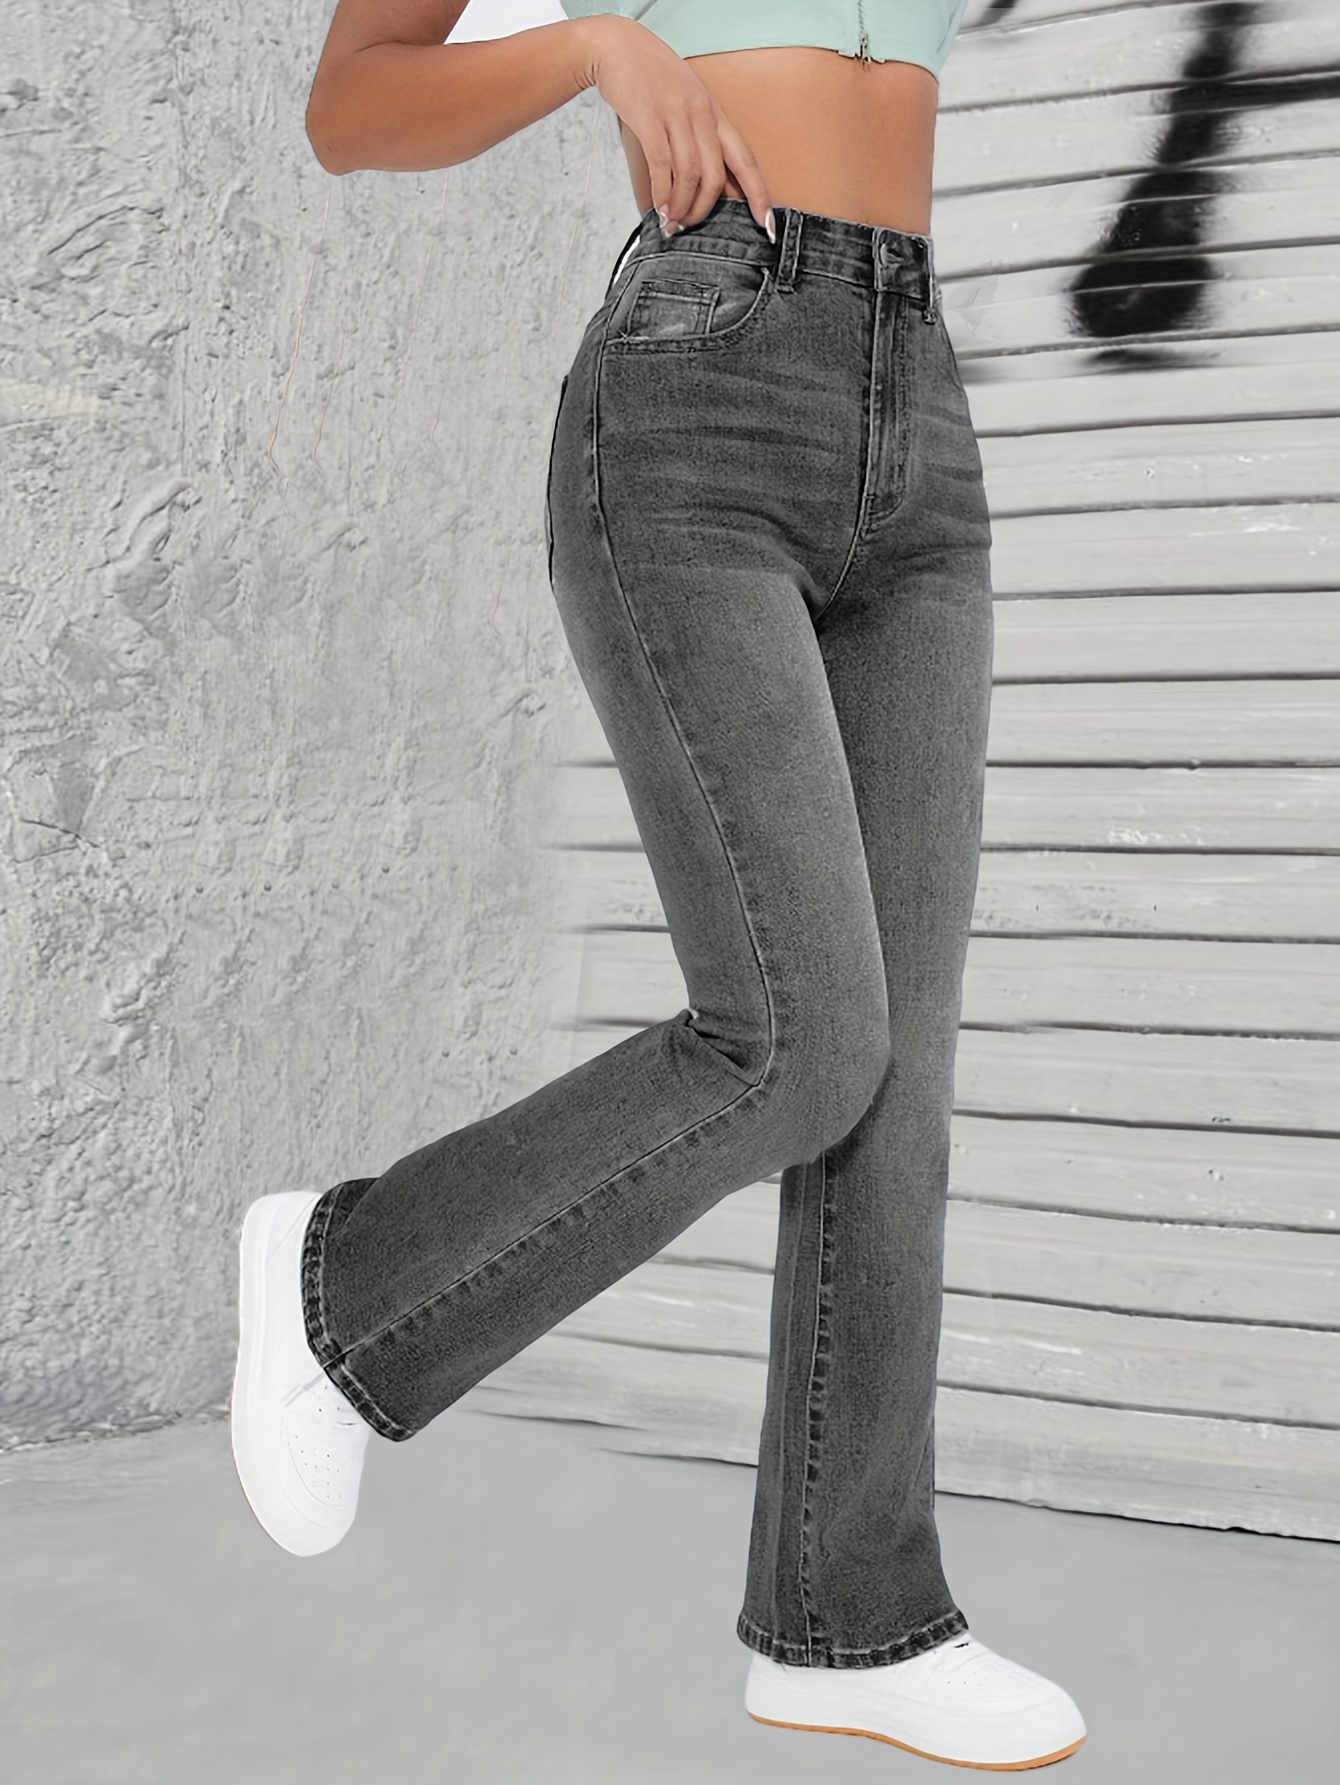 Blue Slant Pocket Bootcut Jeans stretch Washed Versatile - Temu